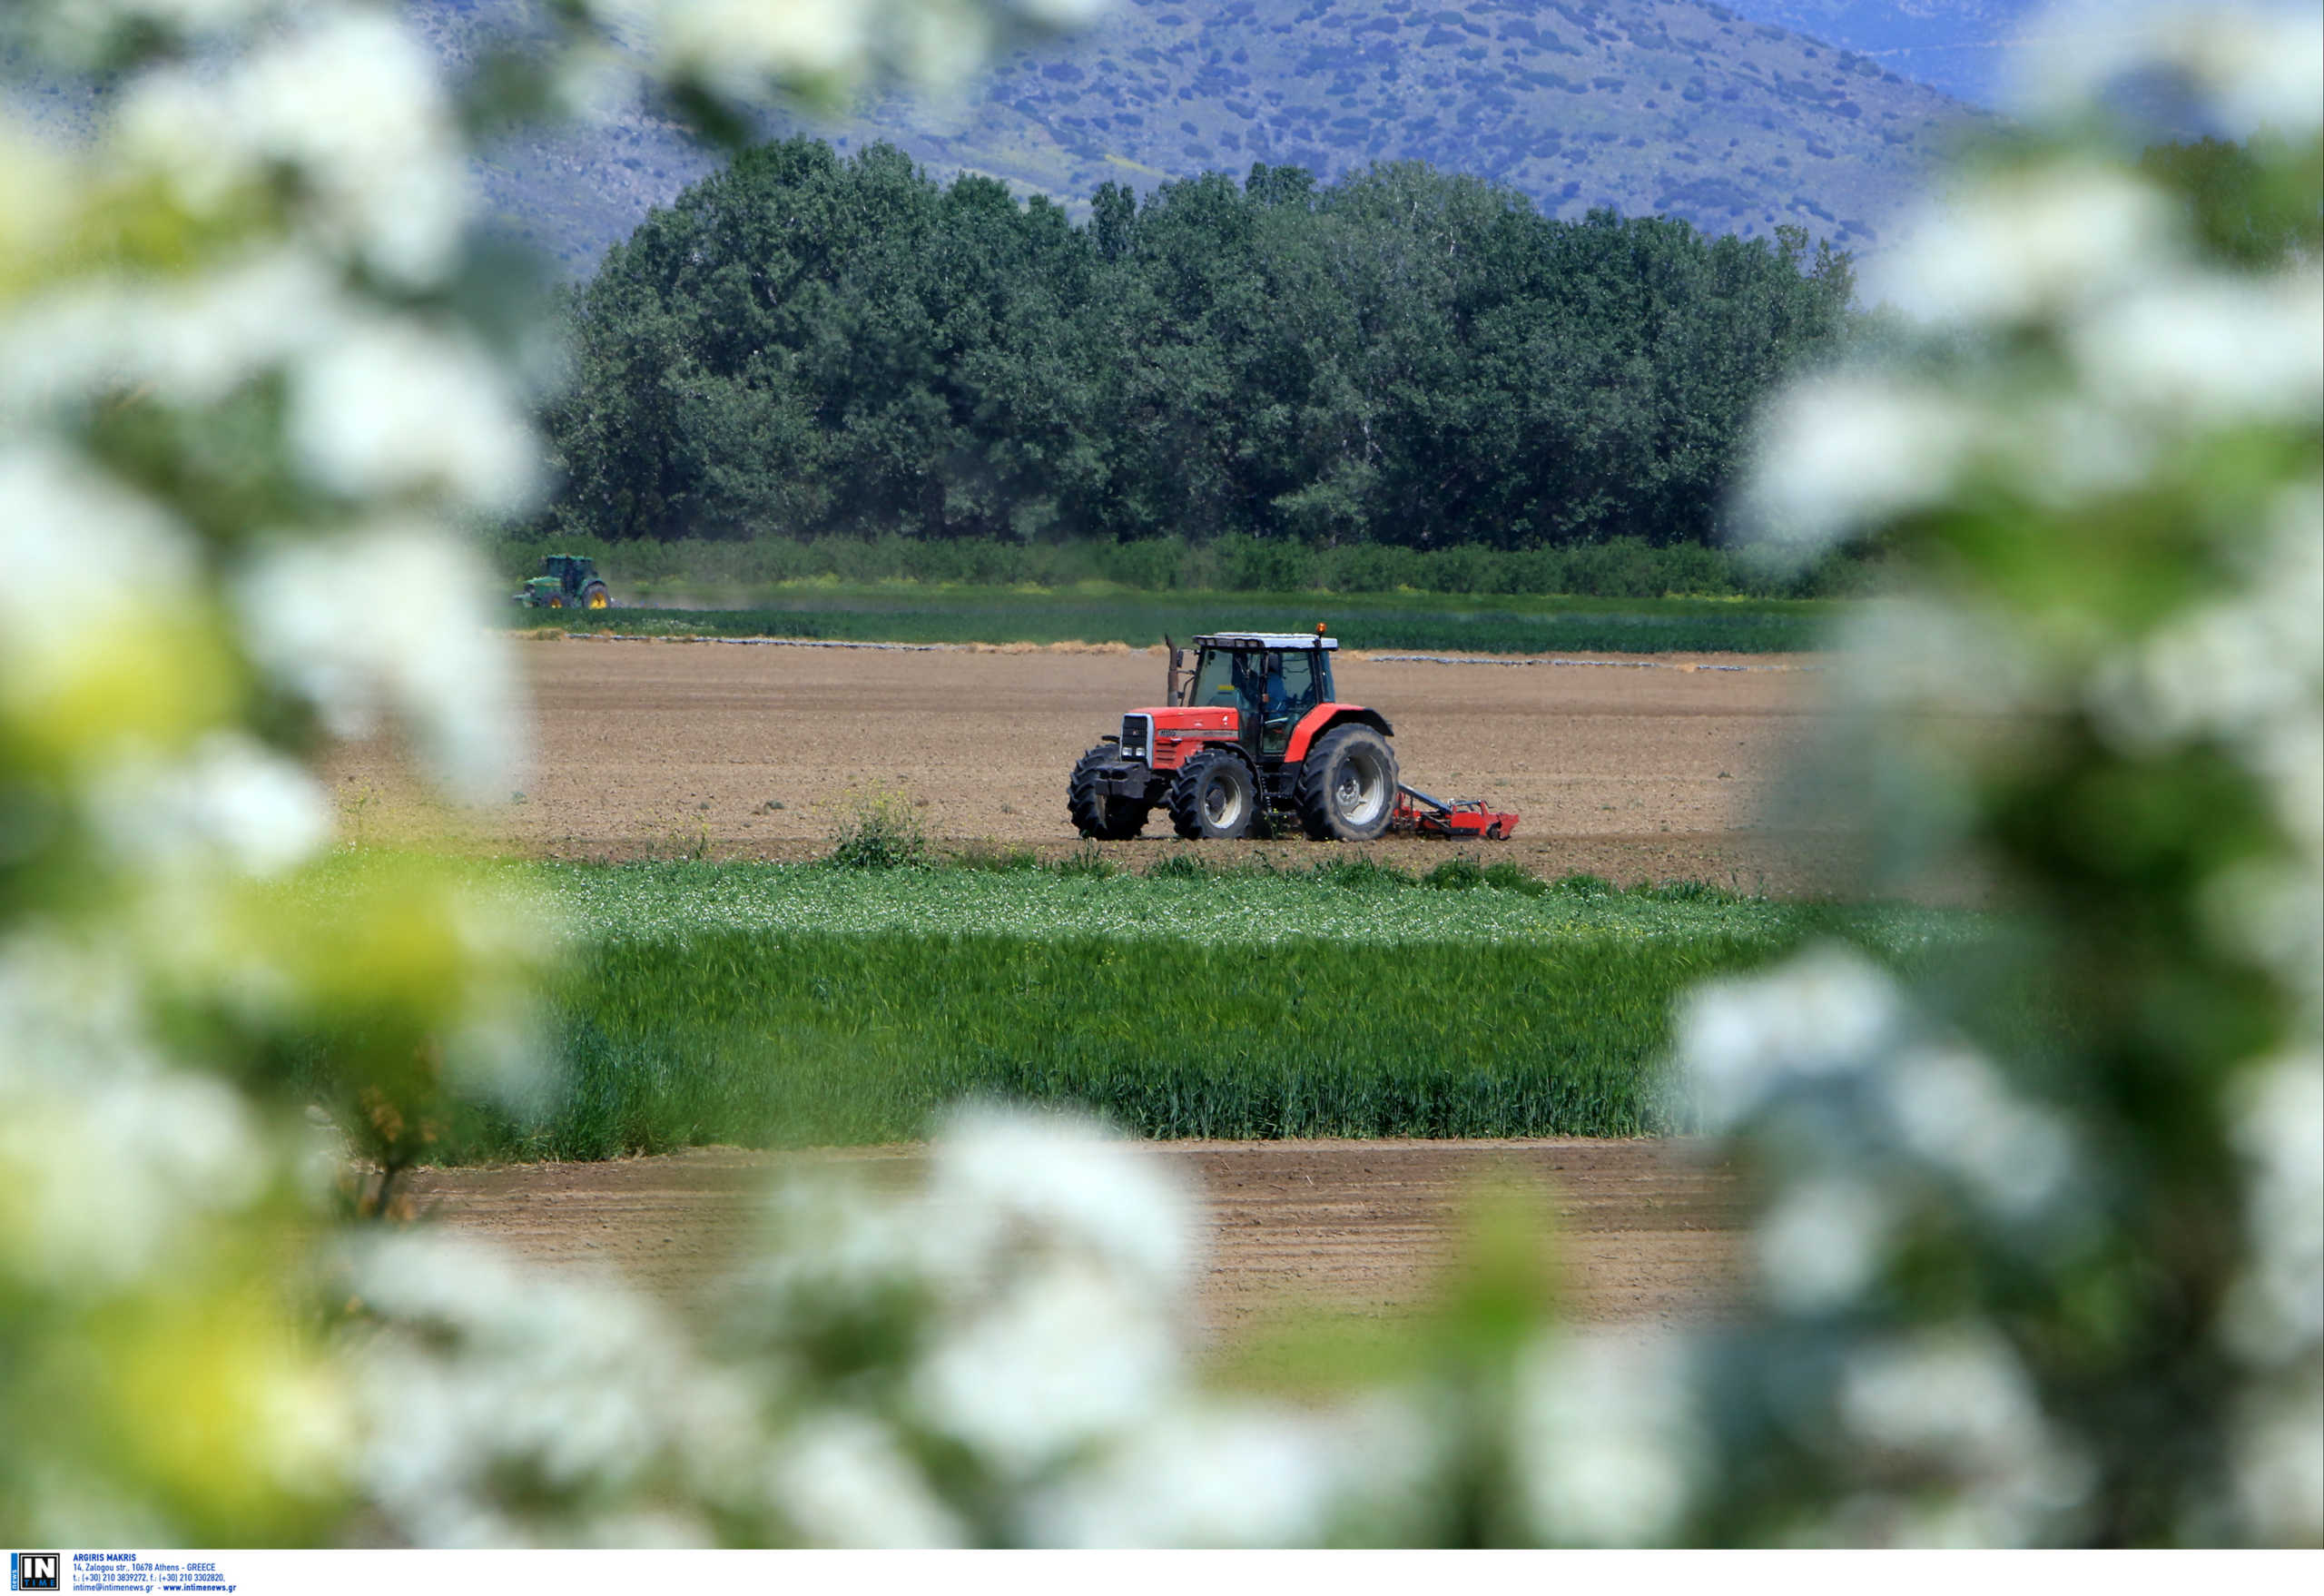 Ημαθία: Στα χωράφια μετά από 30 ολόκληρα χρόνια Έλληνες εργάτες! Ο κορονοϊός άλλαξε τα πάντα